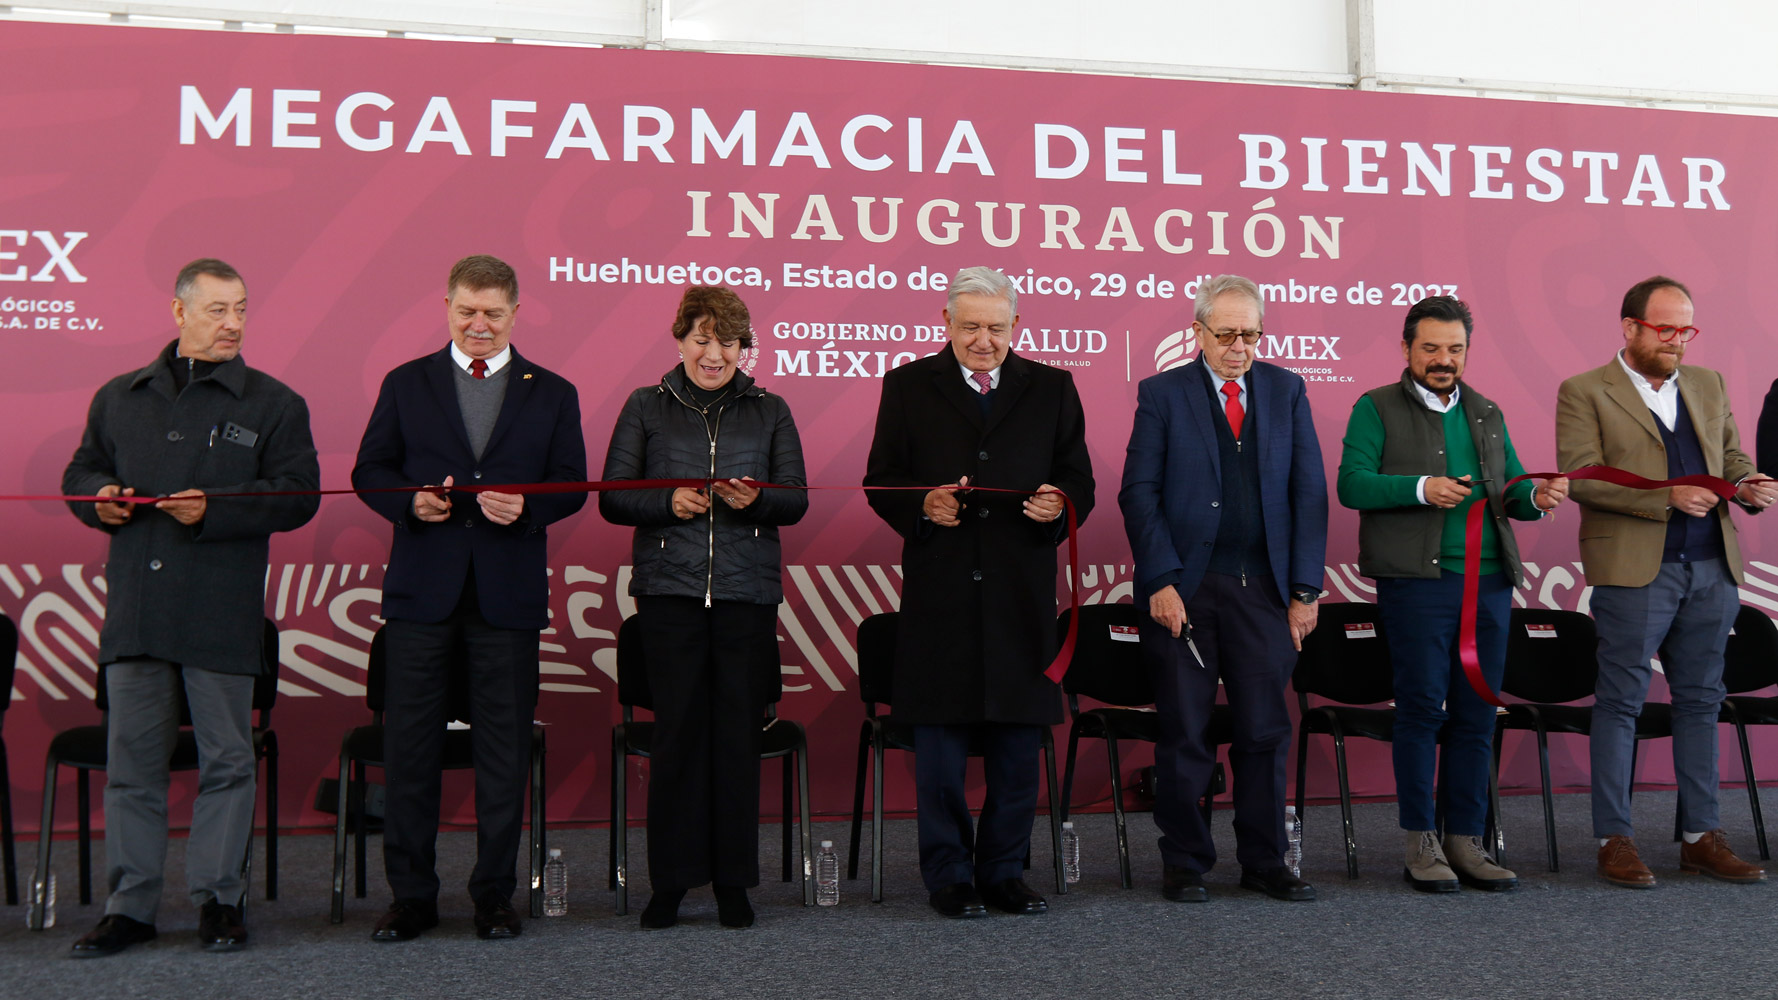 Presidente inaugura Megafarmacia para el Bienestar en Estado de México; “logramos este propósito”